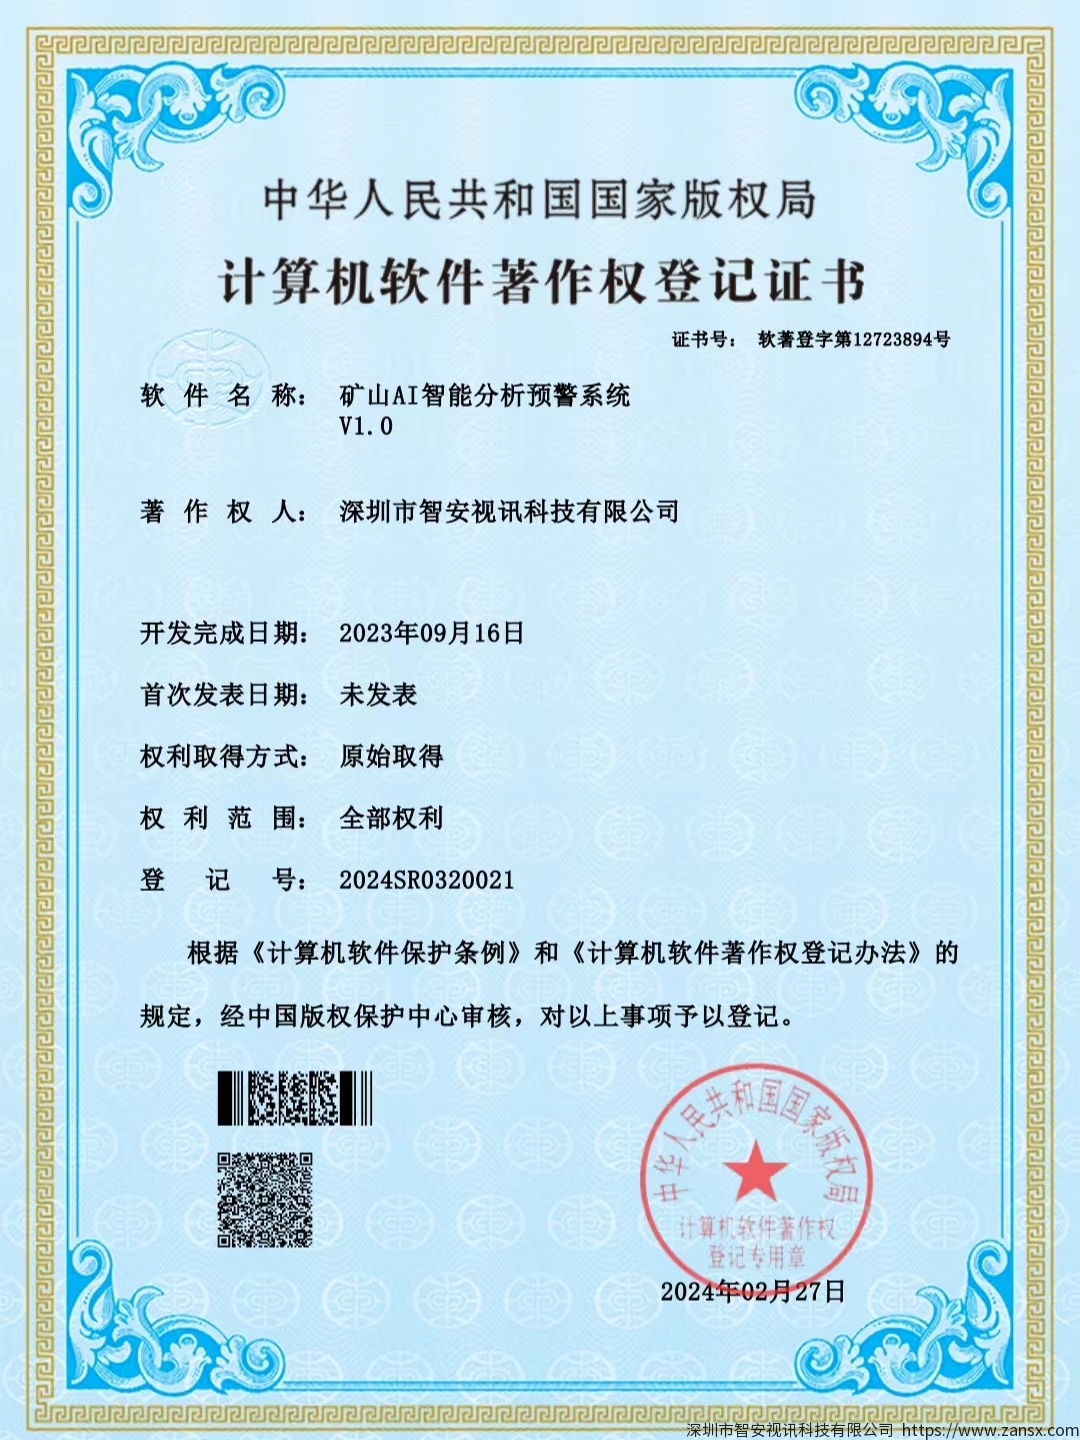 熱烈祝賀深圳市智安視訊科技獲得多項軟件著作權證書(shū)！